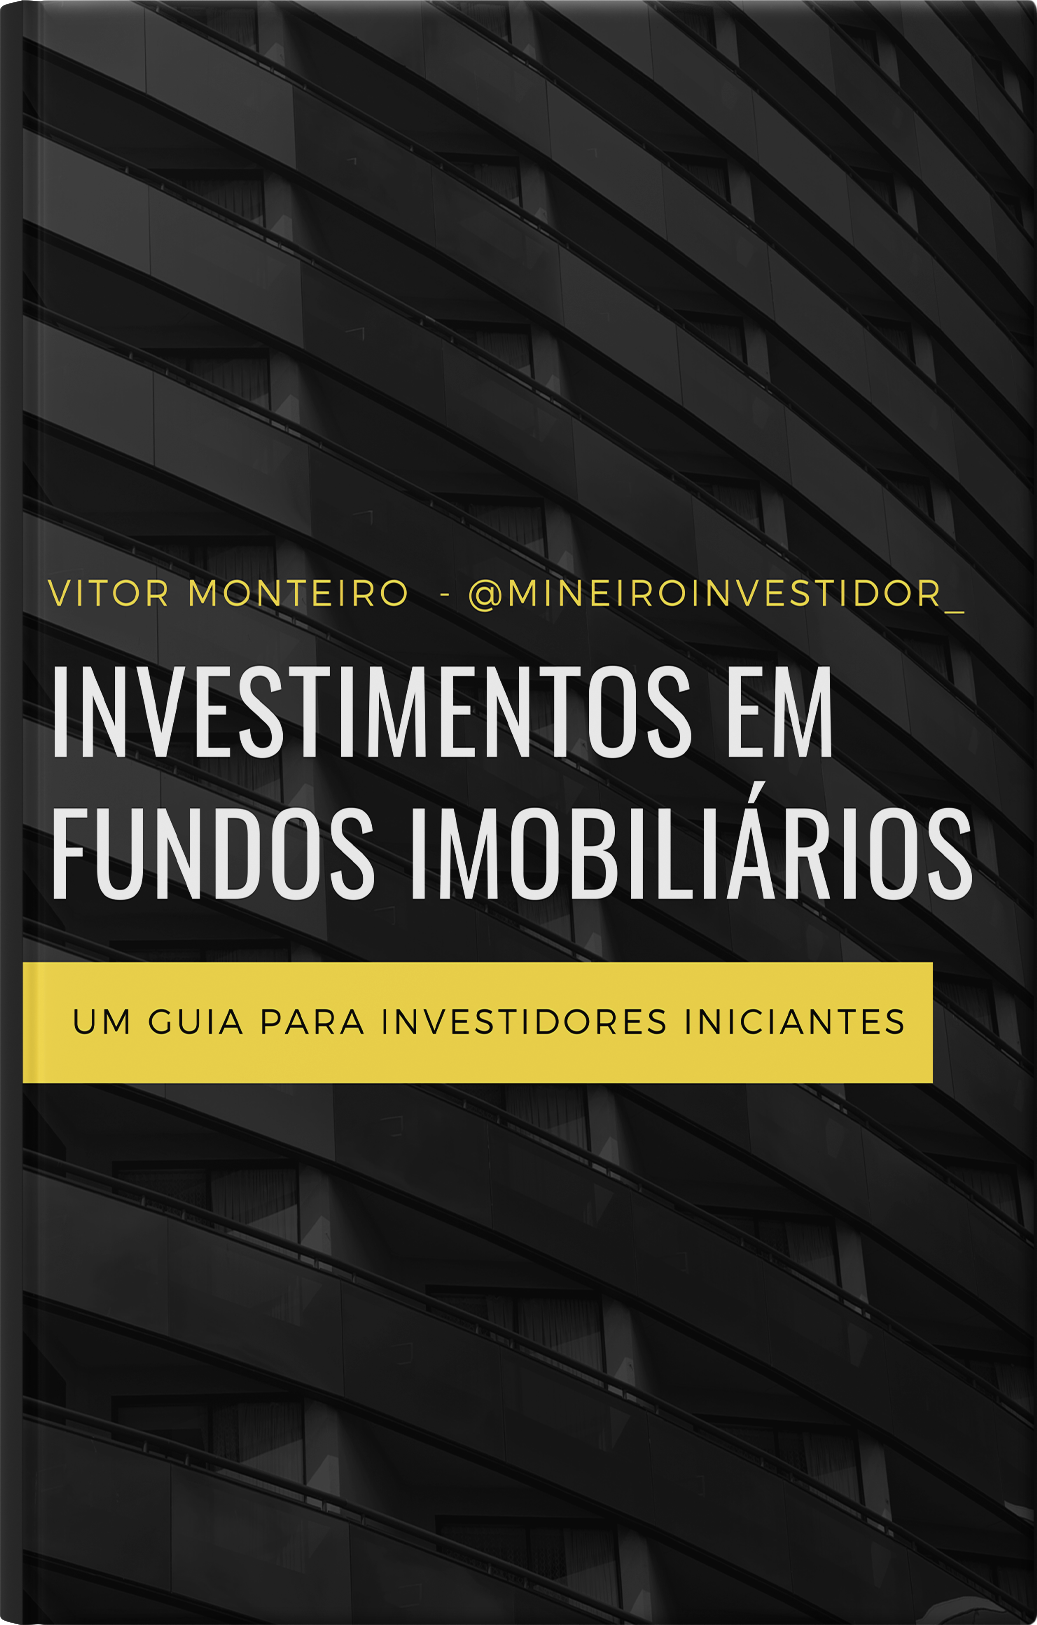 Capa do ebook 'Investimentos em Fundos Imobiliários'